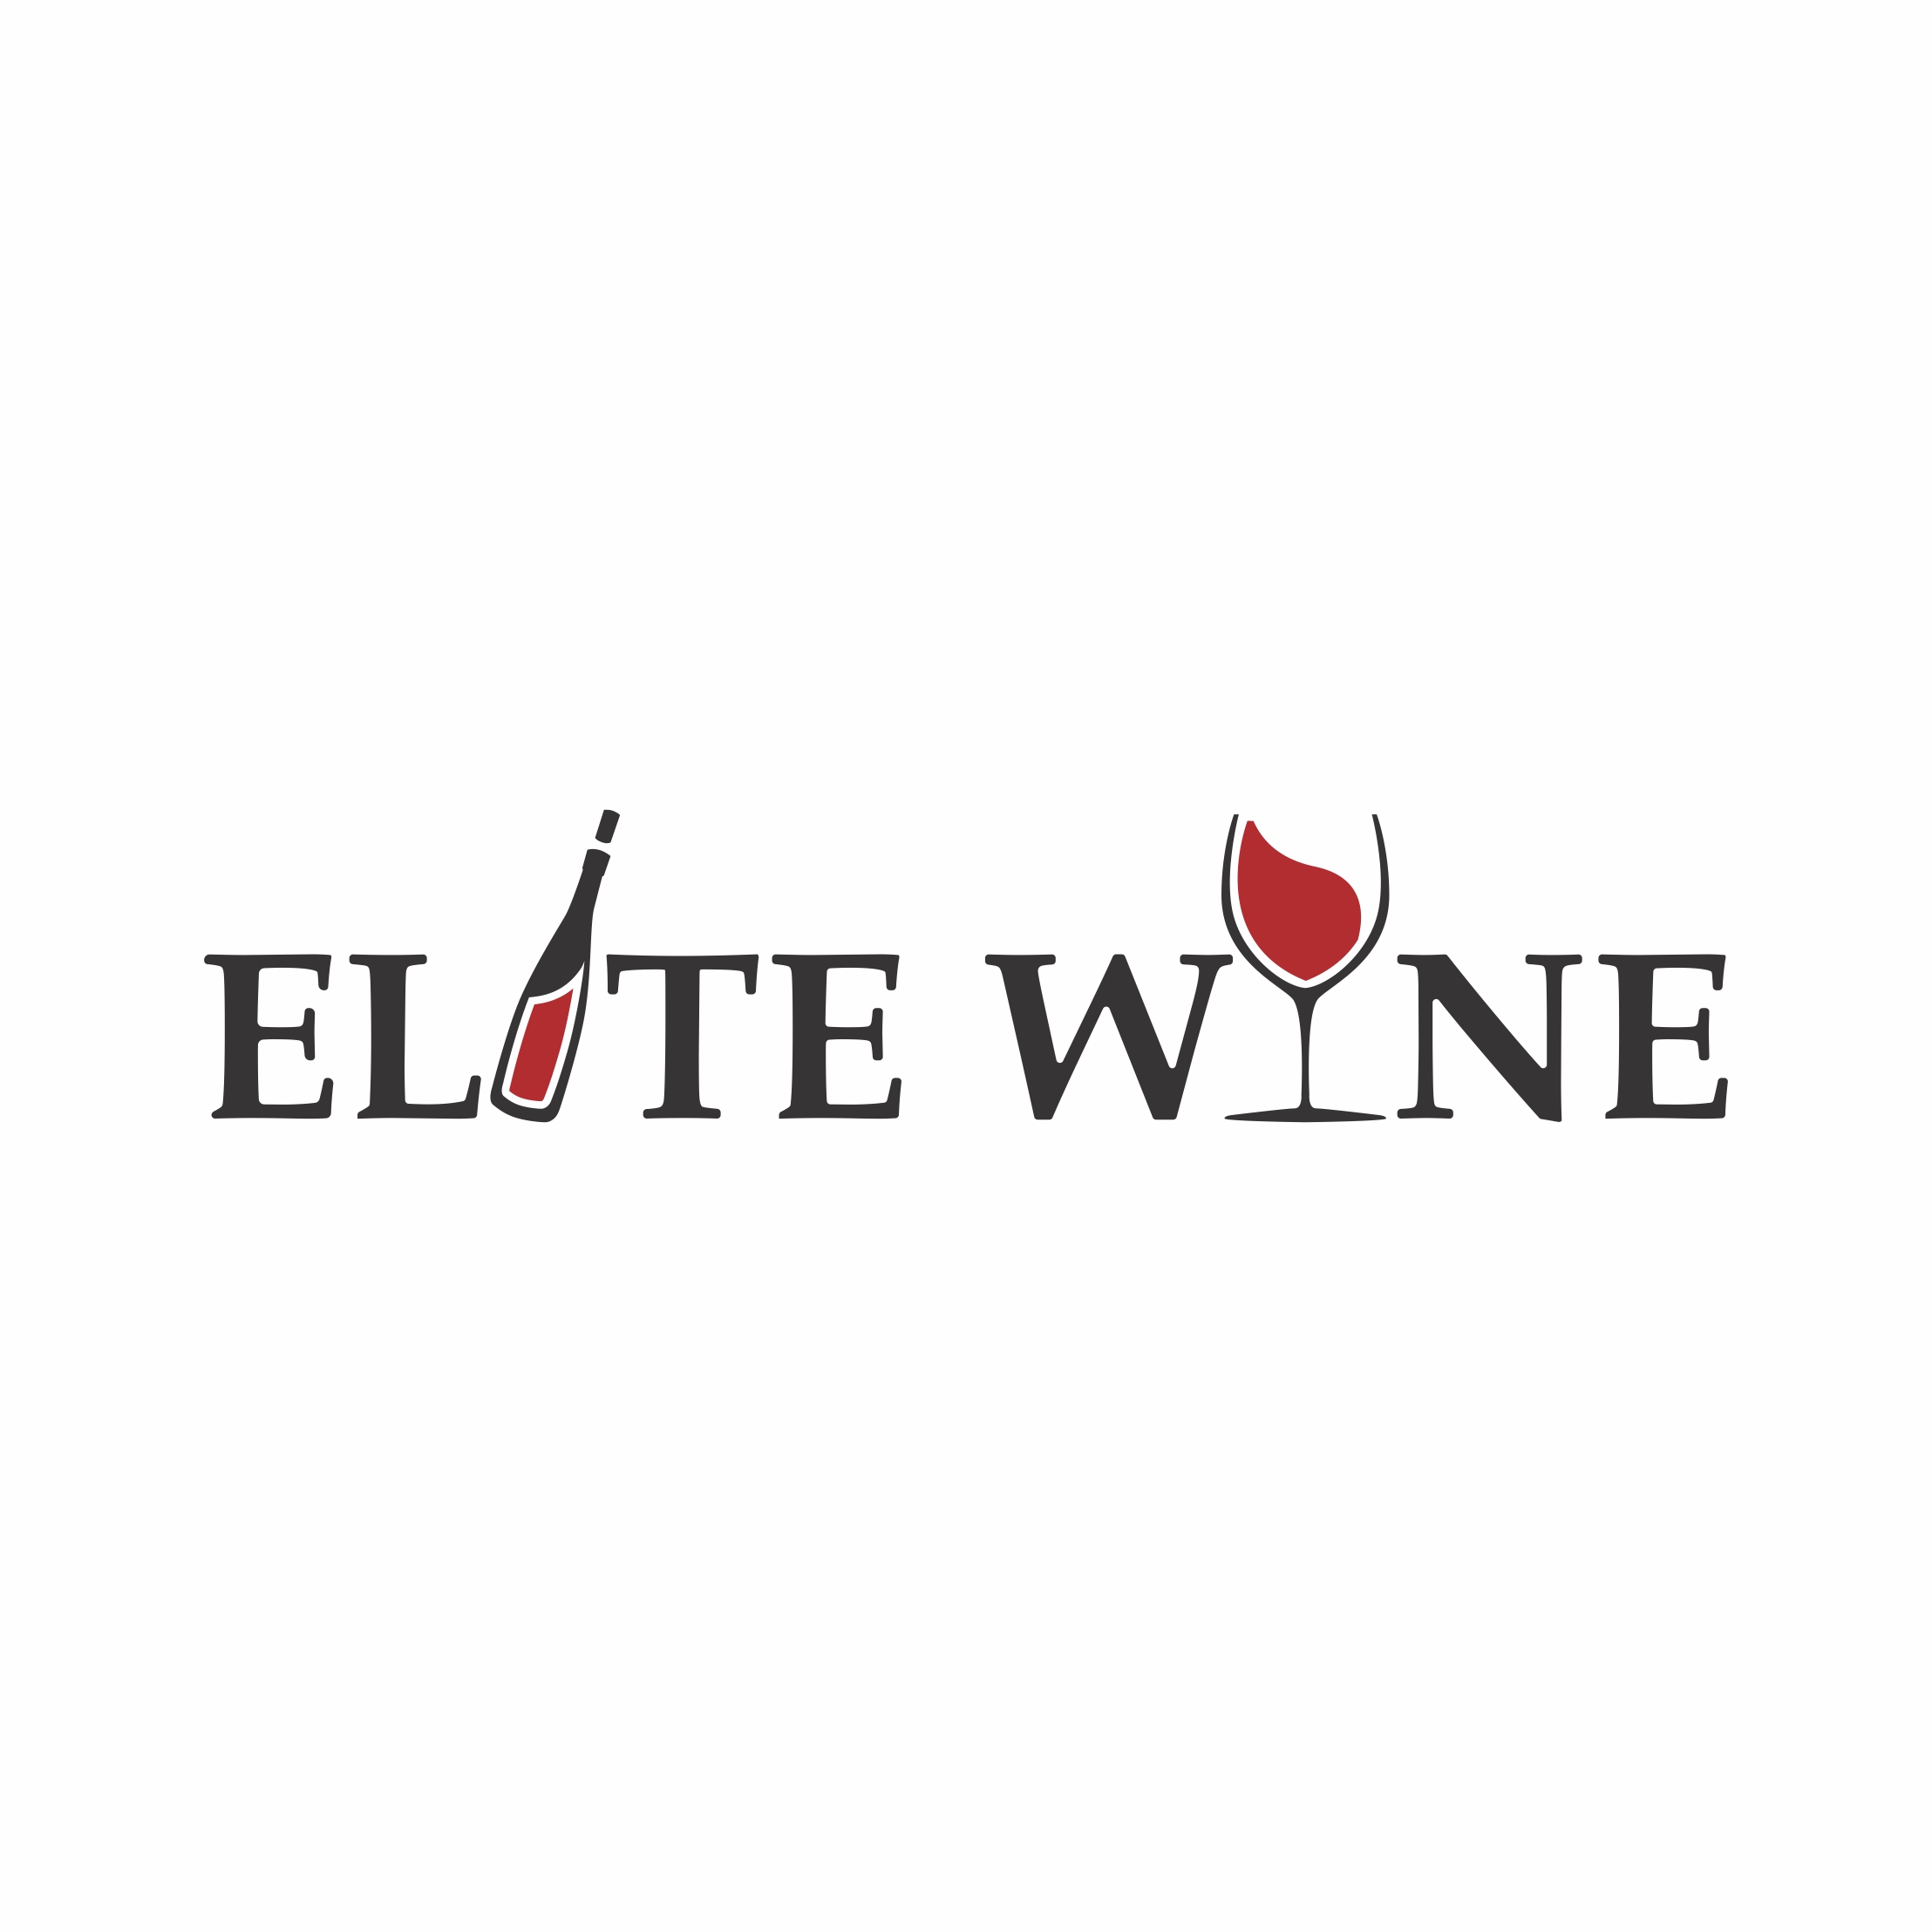 Elite wine